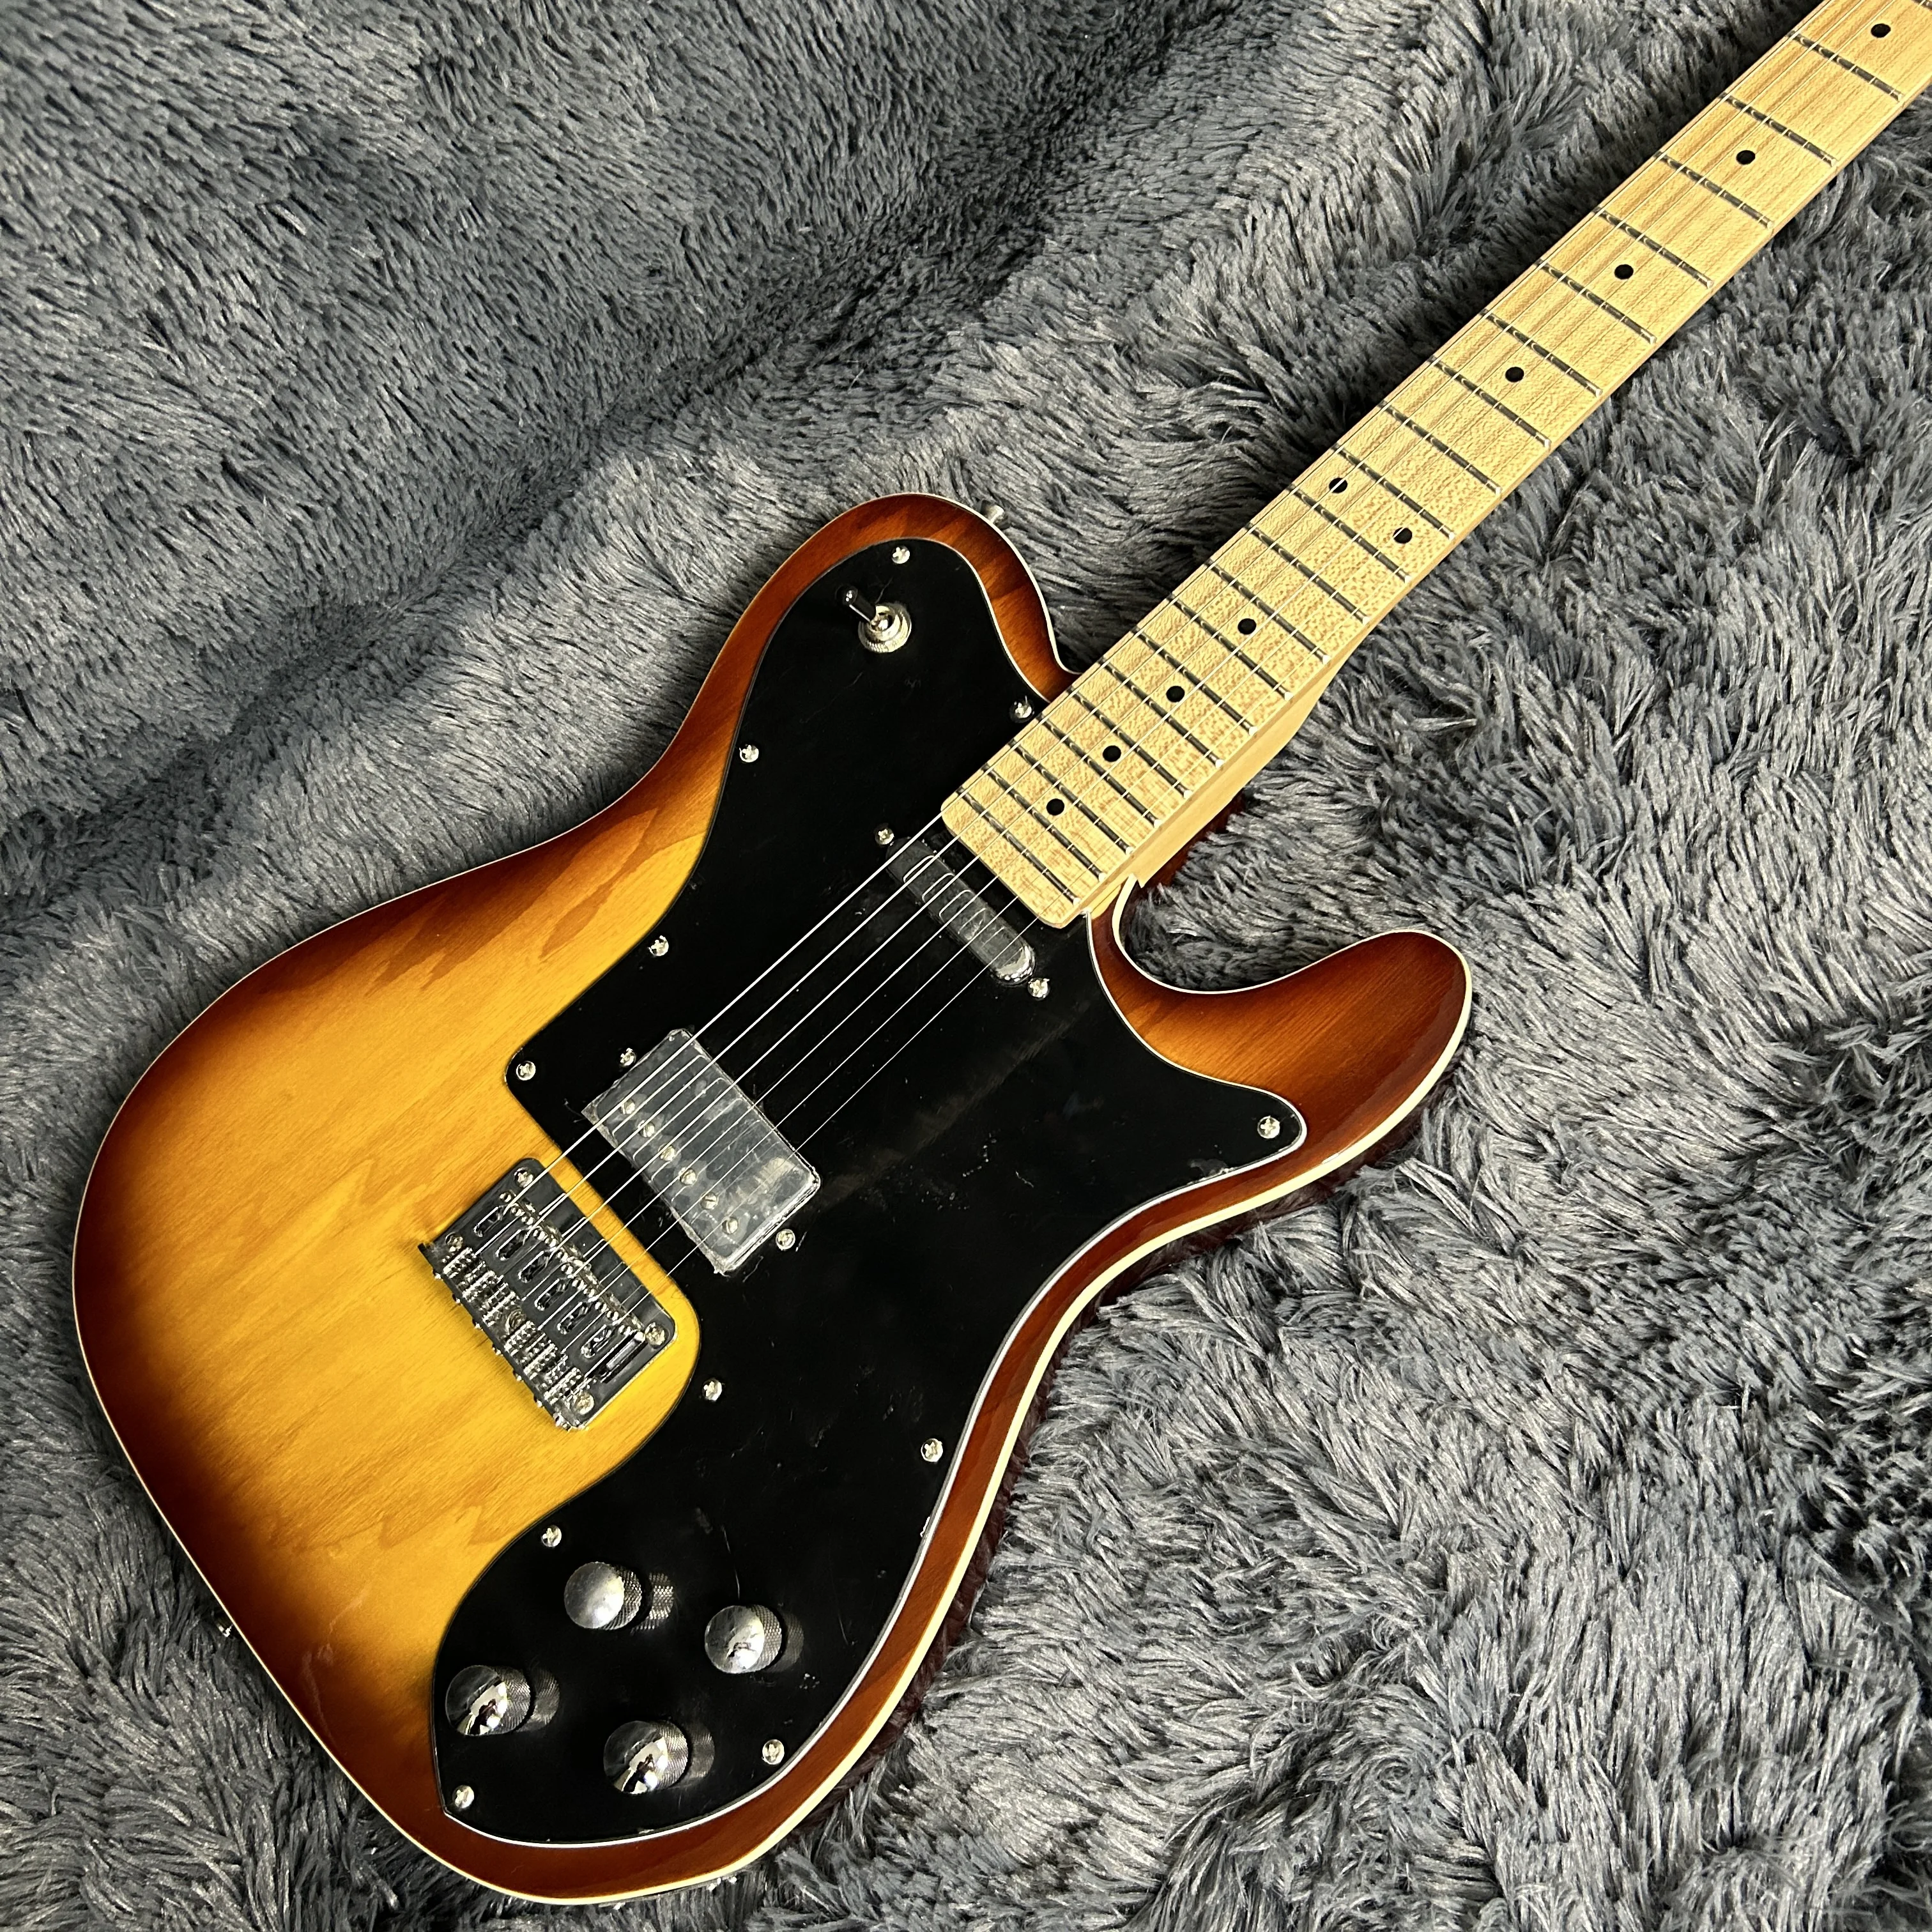 

Электрическая гитара Tele, корпус из липы, винтажный цвет Sunburst, Кленовая подставка, 6-струнная гитара, крутая, бесплатная доставка